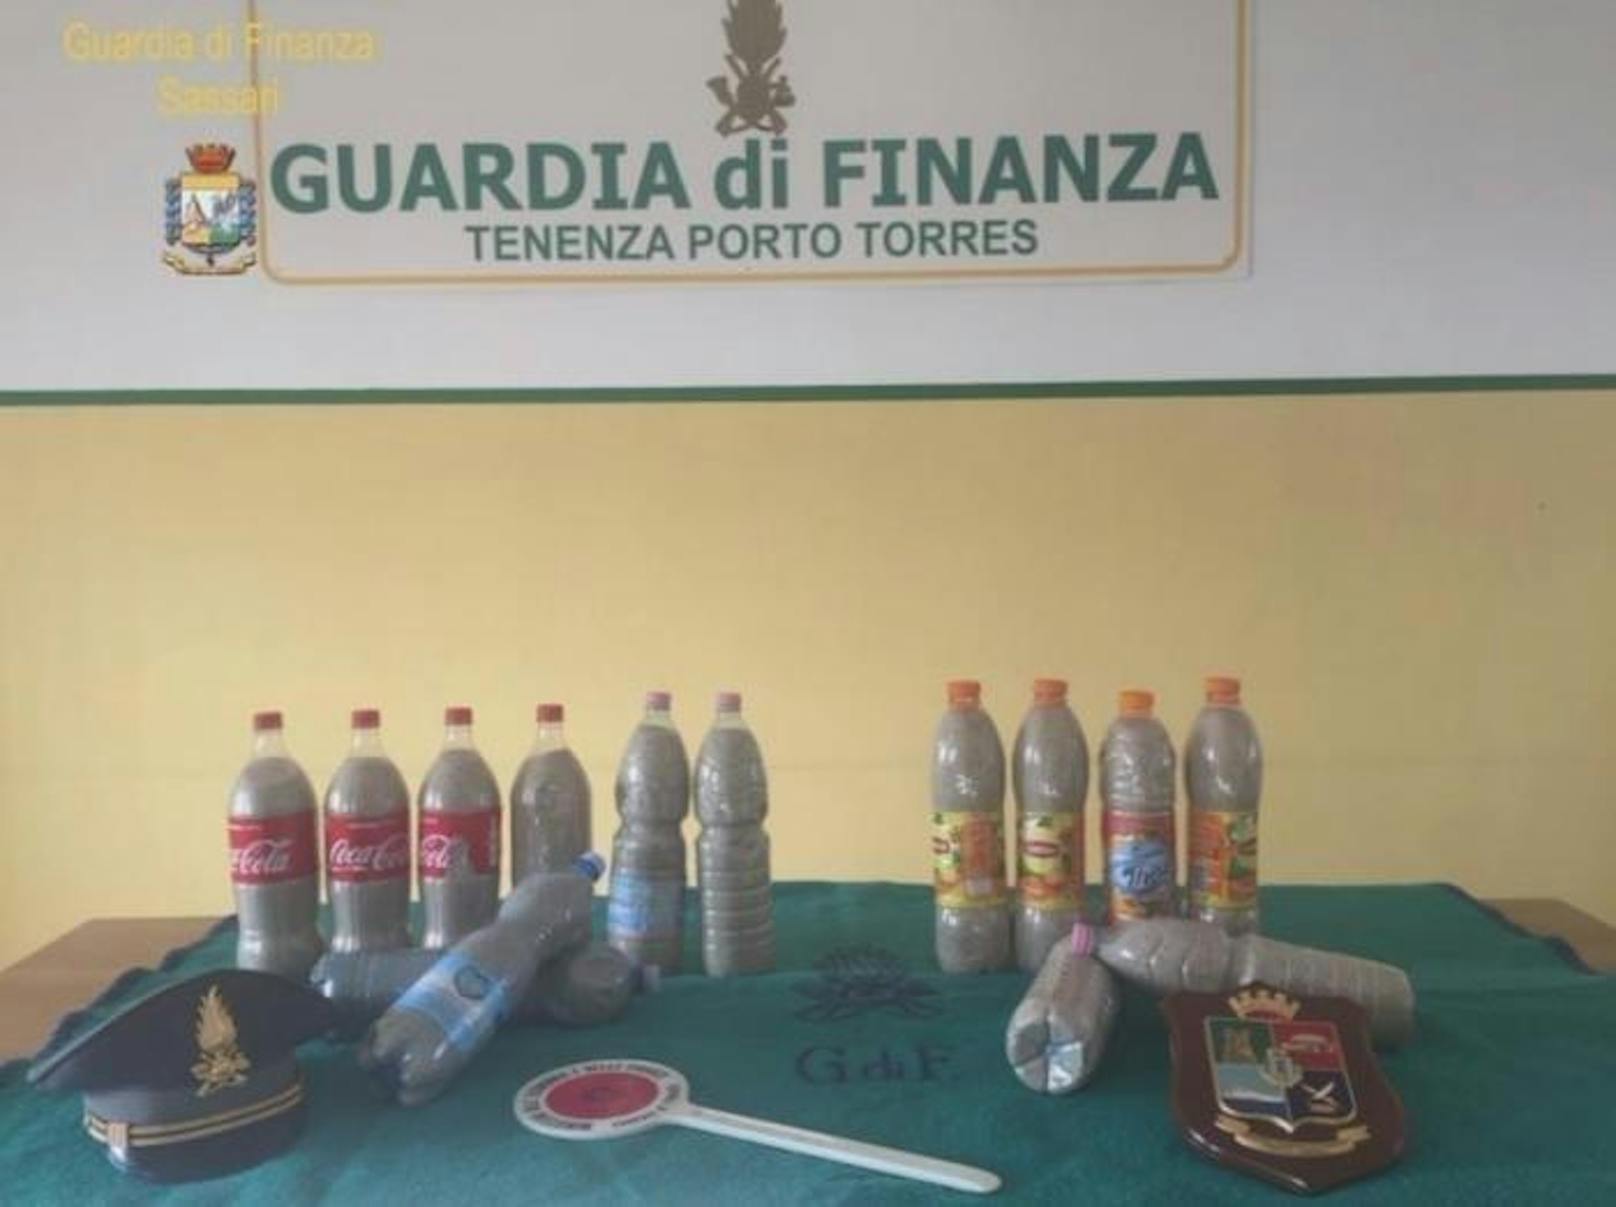 Die italienische Finanzpolizei auf Sardinien beschlagnahmte 40 Kilo Sand, das ein französisches Touristenpaar in 14 Flaschen abgefüllt hatte.